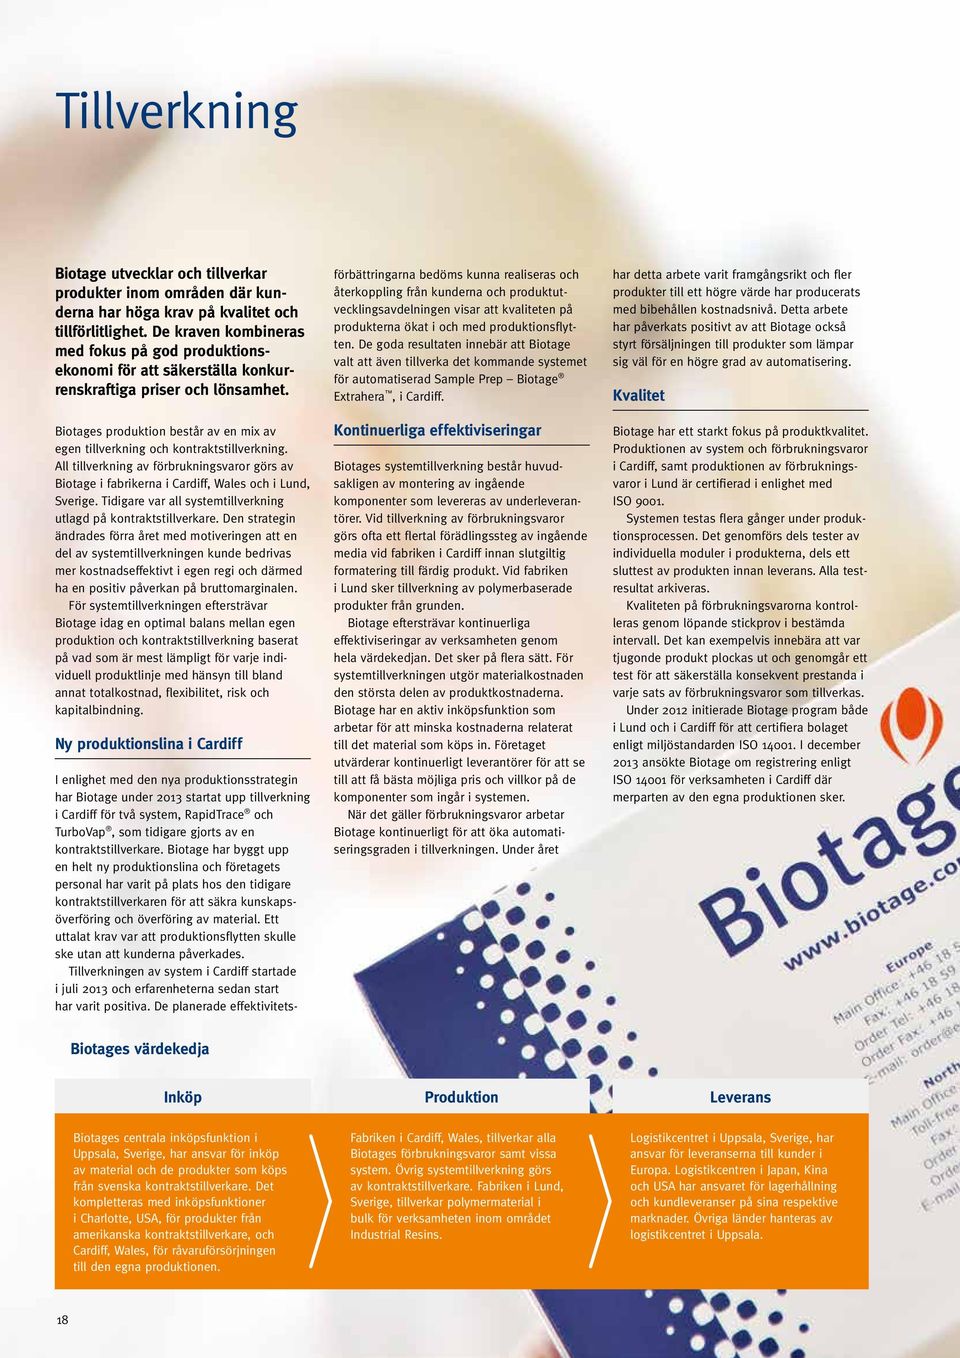 Biotages produktion består av en mix av egen tillverkning och kontraktstillverkning. All tillverkning av förbrukningsvaror görs av Biotage i fabrikerna i Cardiff, Wales och i Lund, Sverige.